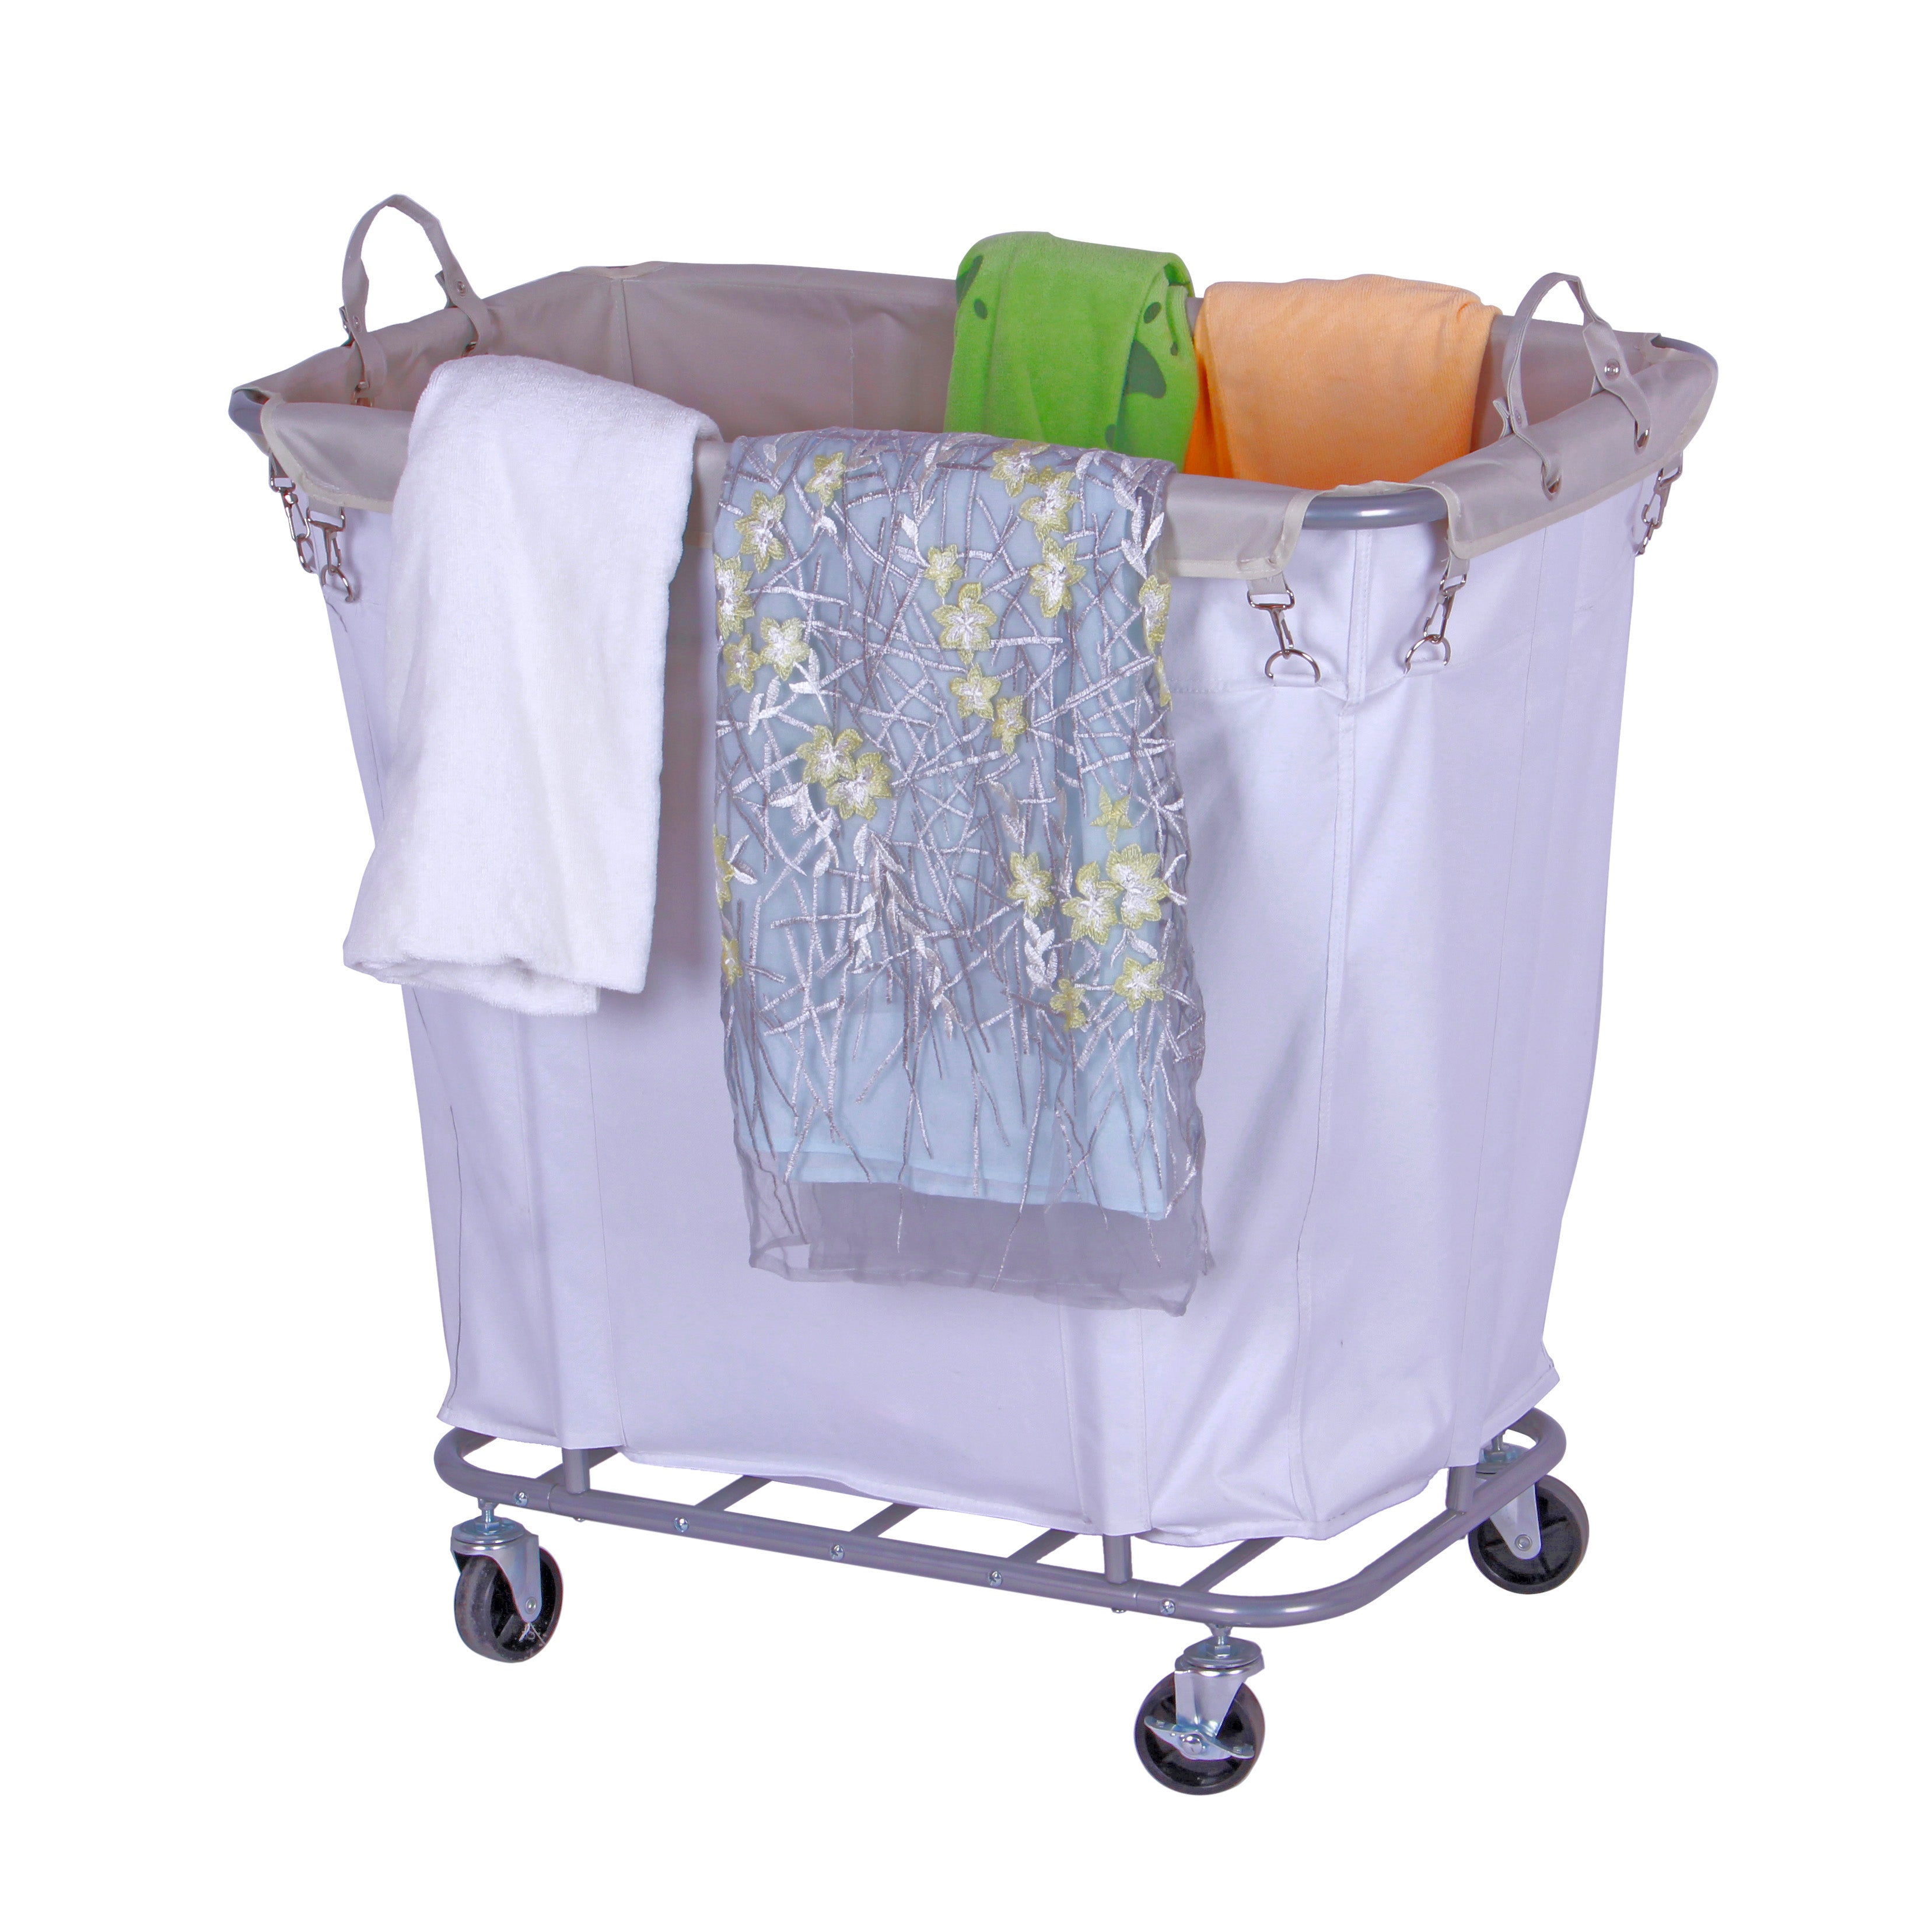 Laundry Hamper Cart, AN-40-2265